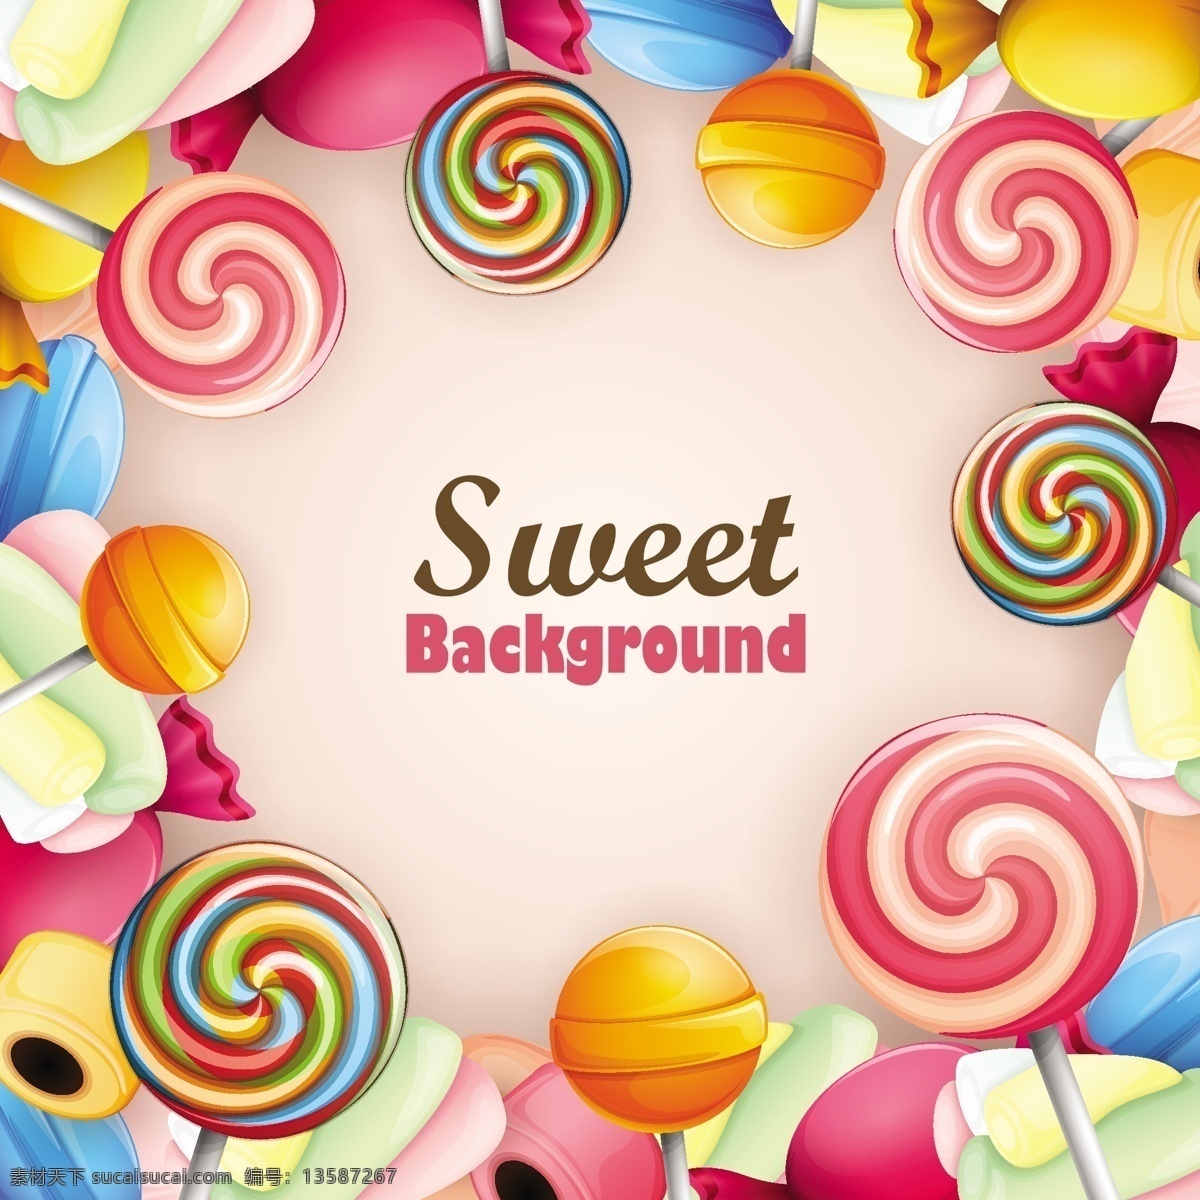 棒棒糖素材 糖果素材 甜品 诱惑糖果 糖果 甜点 棒棒糖 商店 海报 标签 水果硬糖 糖果派对 糖果宣传 棒棒糖海报 棒棒糖派对